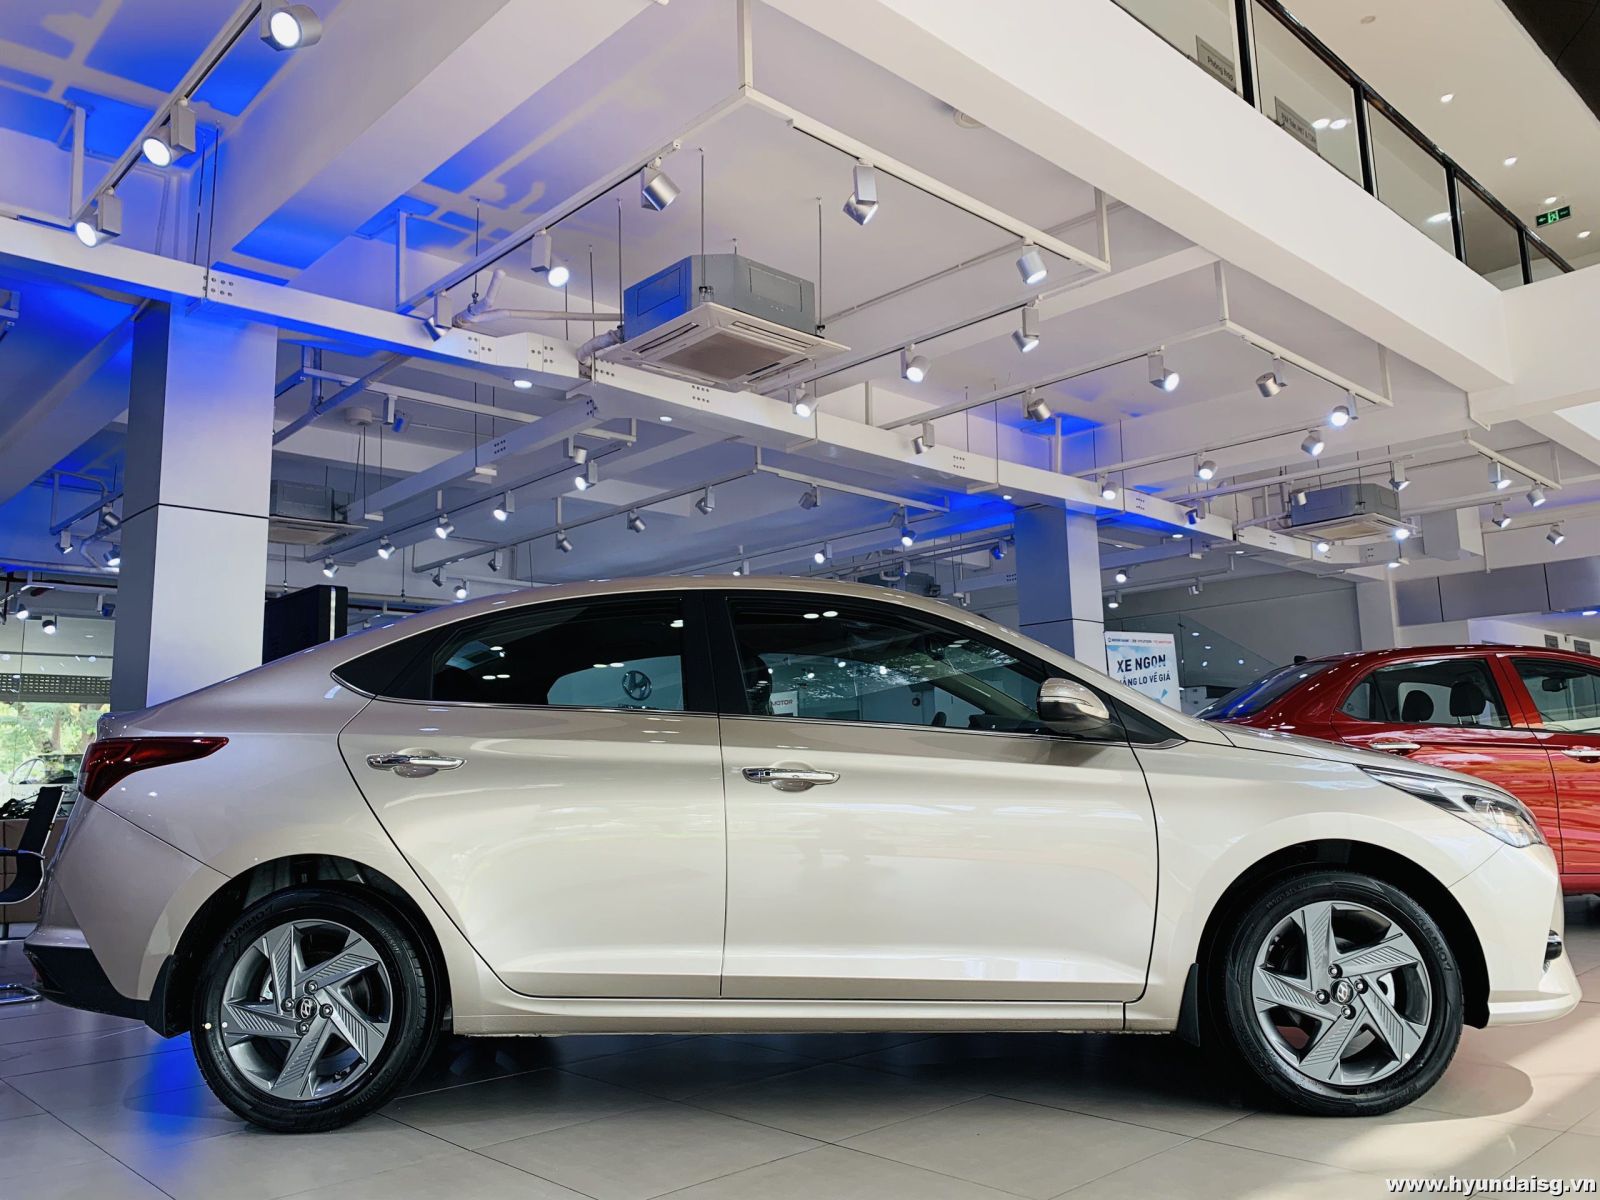 Ngoại hình xe Hyundai Accent so với các phiên bản cũ lịch lãm và mang đậm chất thể thao